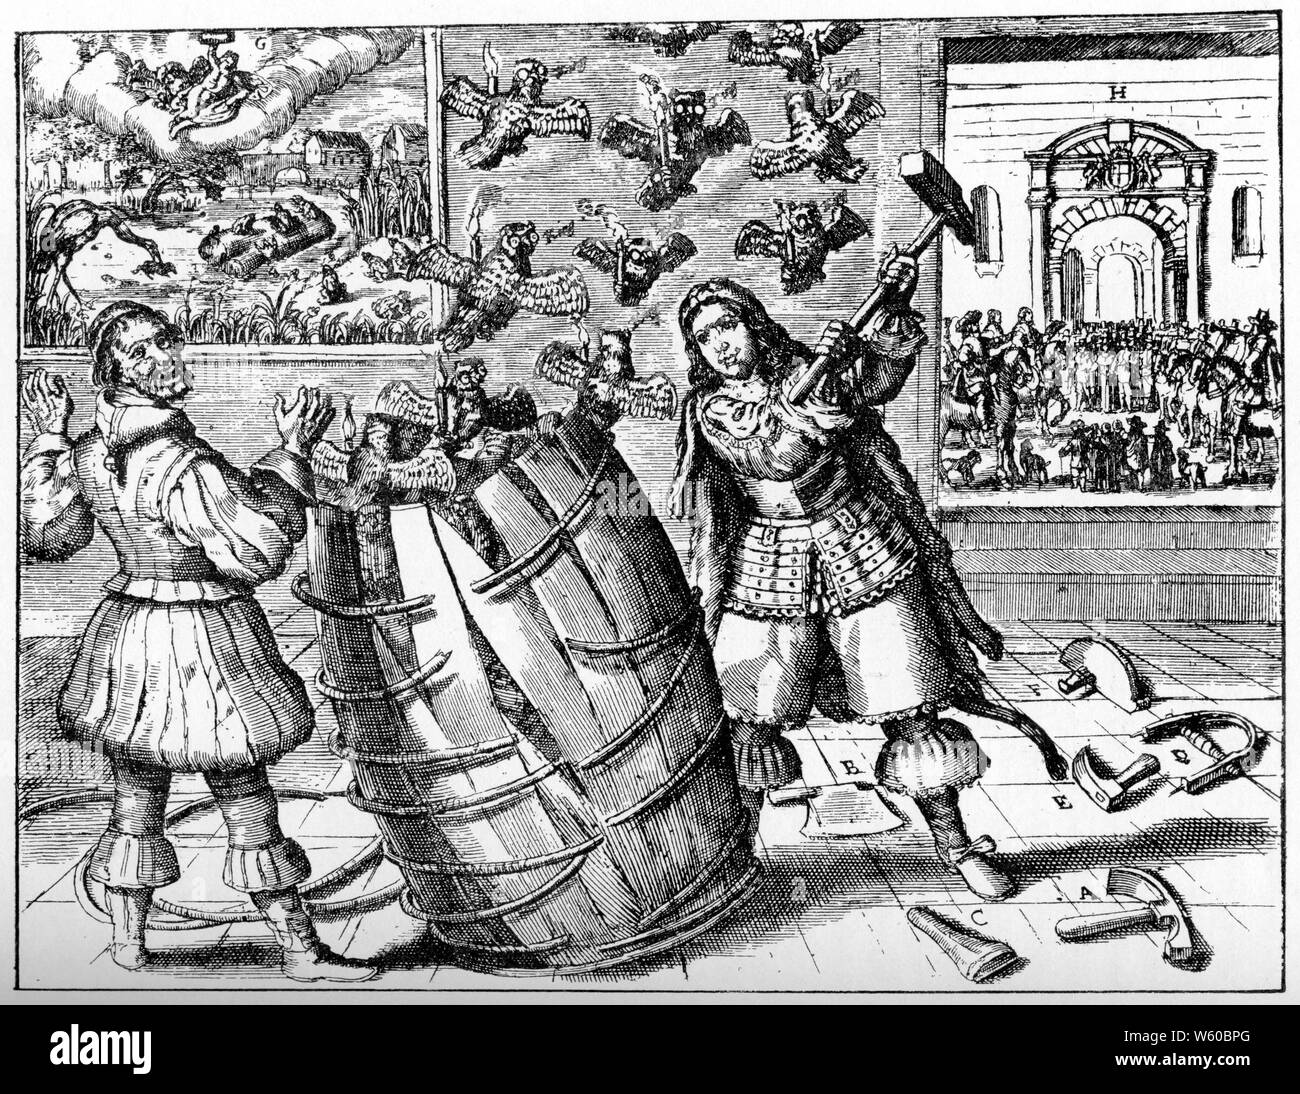 Un grand satirizing hollandais Richard Cromwell, c1659. Richard Cromwell (au centre) est montré comme un cooper portant une peau de lion, avec des outils de cuivre à ses pieds, détruisant avec un marteau un tonneau dont les hiboux espectacatrices transportant des bougies brûlantes s'échappent. Sur la gauche, une figure de Pickleharengs, le clown, levant les bras; en arrière-plan deux images, sur la gauche montrant la fable d'Aesop 'les grenouilles et le roi Stork', sur la droite, une proclamation d'état se déroule dans une cour avec les bras du Commonwealth au-dessus d'une arche. Banque D'Images